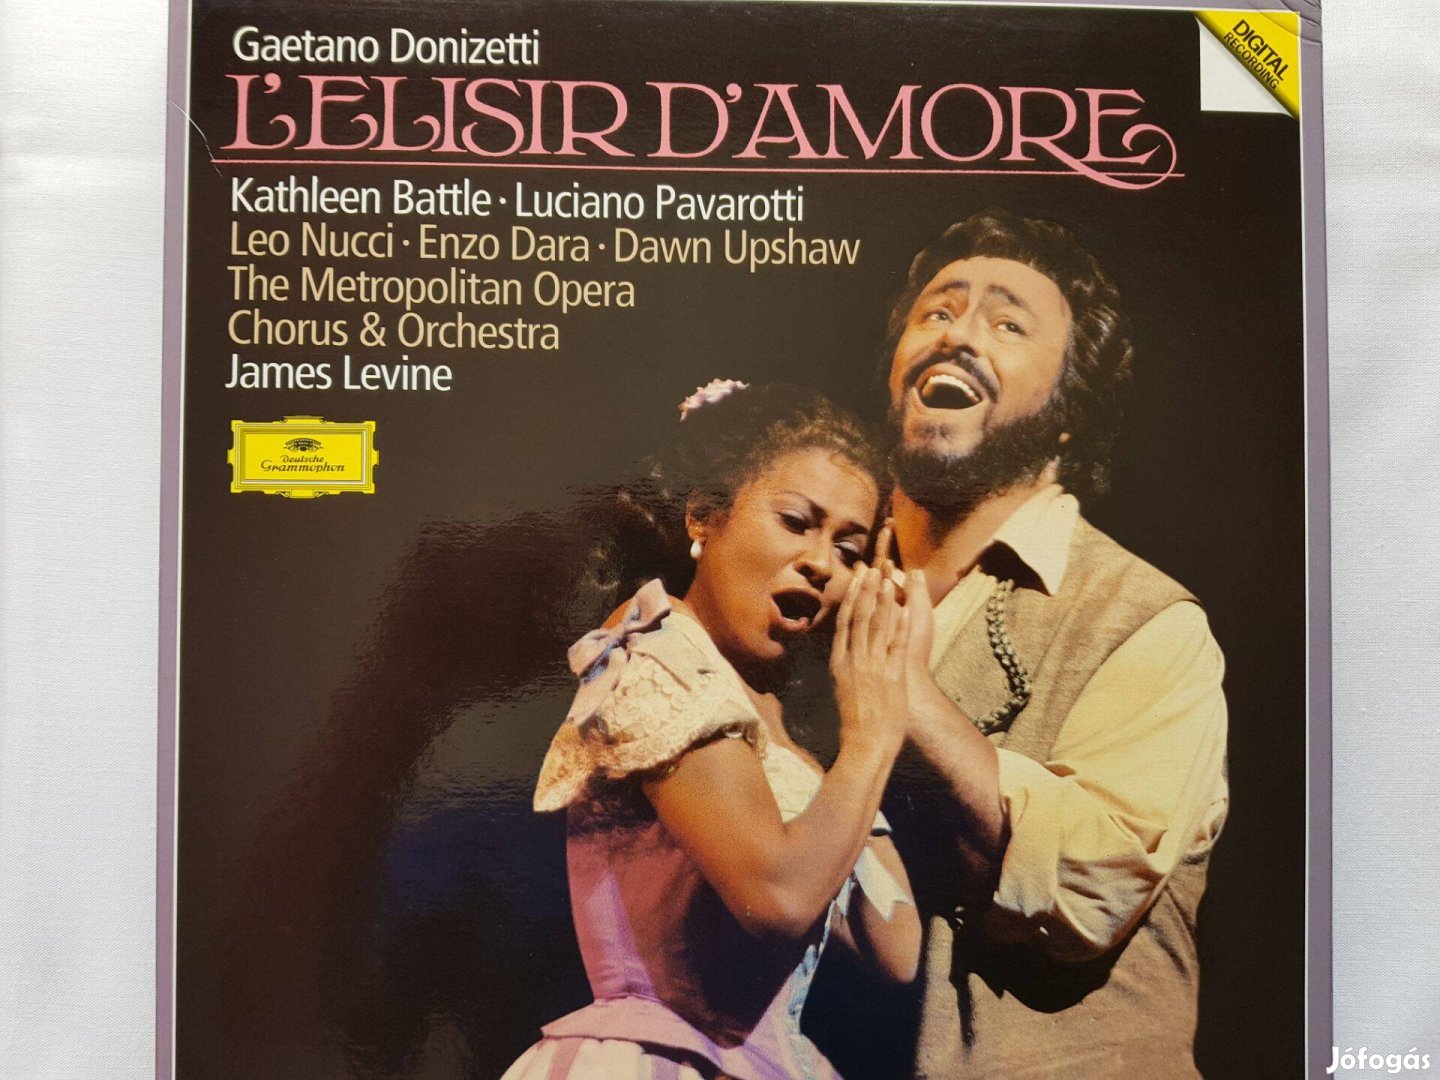 Donizetti - Levine: Szerelmi bájital 2 LP